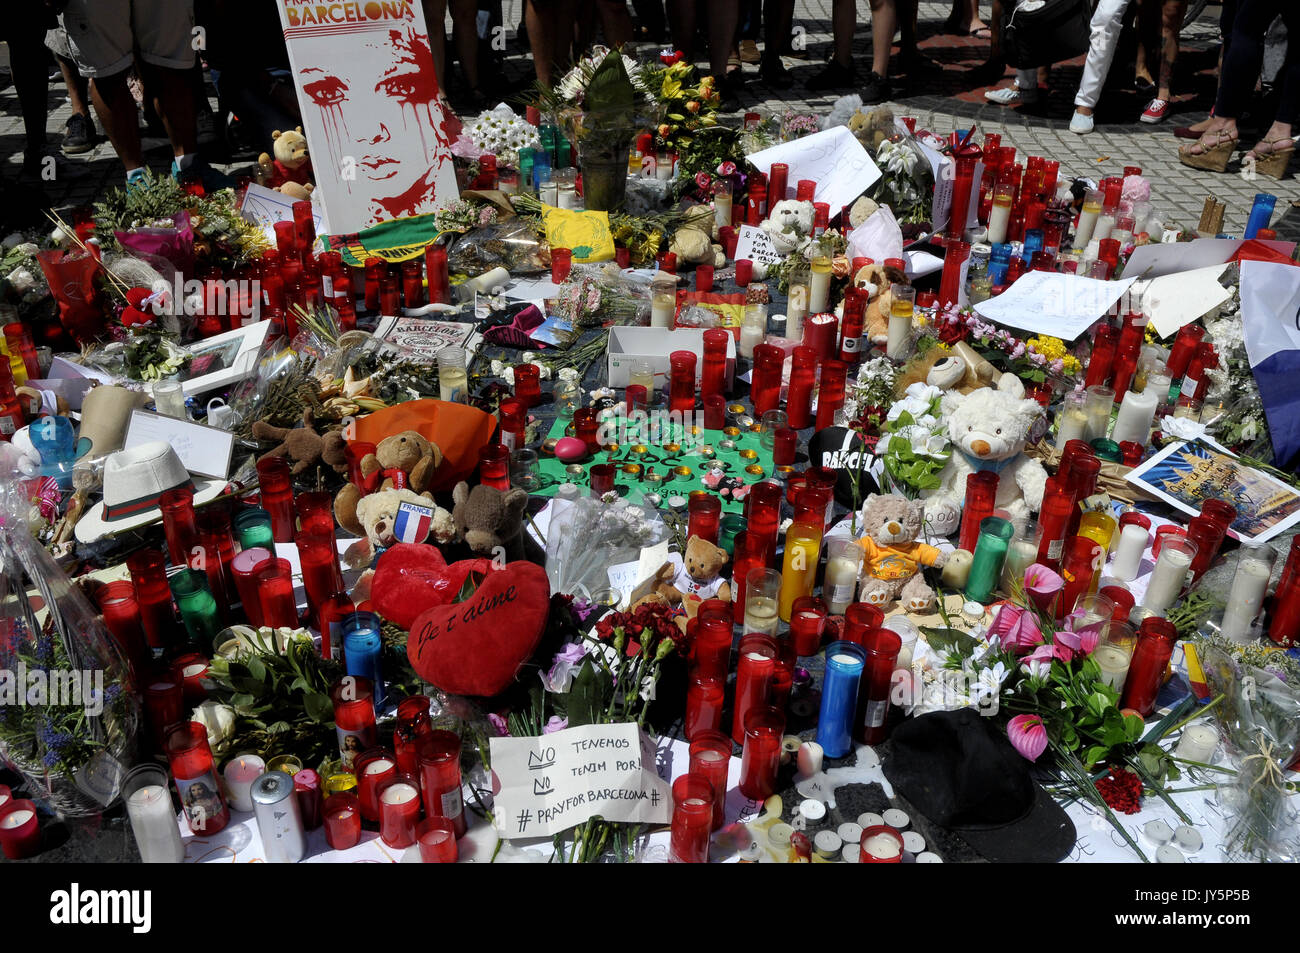 Las Ramblas, Barcelona, Spagna. Il 18 agosto 2017. Conseguenze sulle Ramblas il giorno dopo il terrorista atack in Barcellona. Credito: Rosmi Duaso/Vita Alamy News Foto Stock